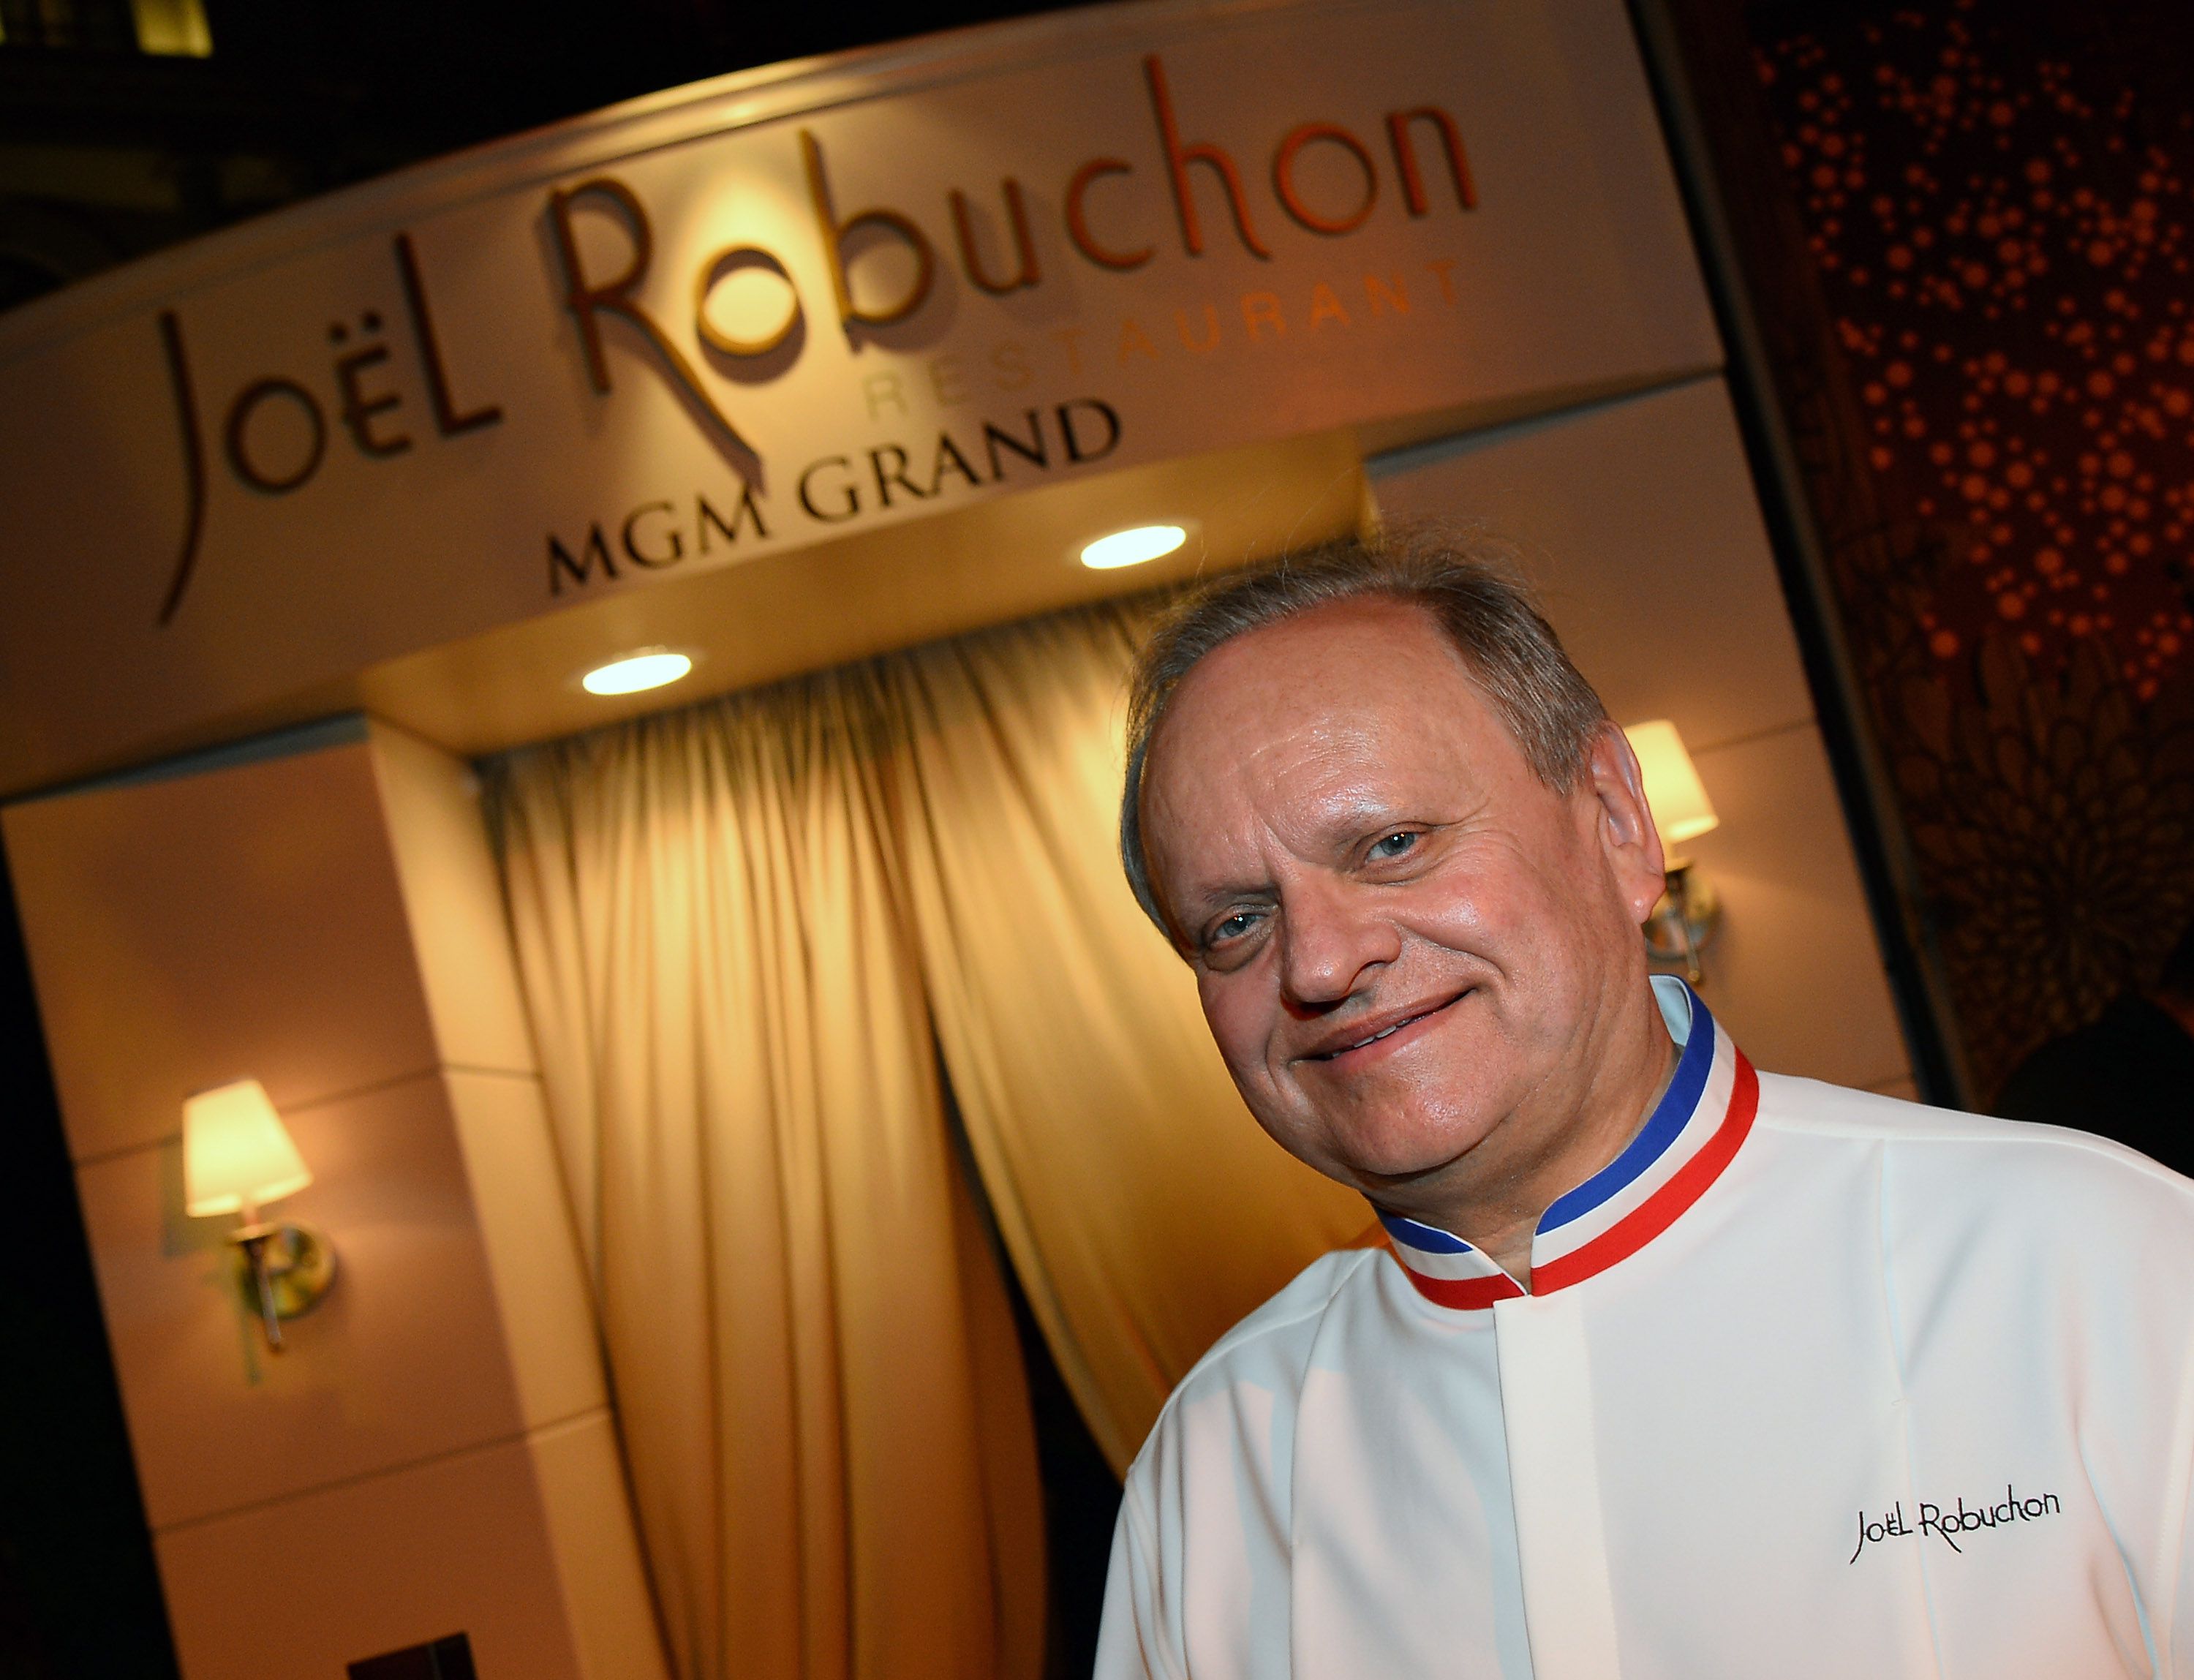 20. yüzyılın en iyi şefi seçilen Joel Robuchon sadece bir şef değil, dev bir gastronomi holdinginin patronuydu aynı zamanda...